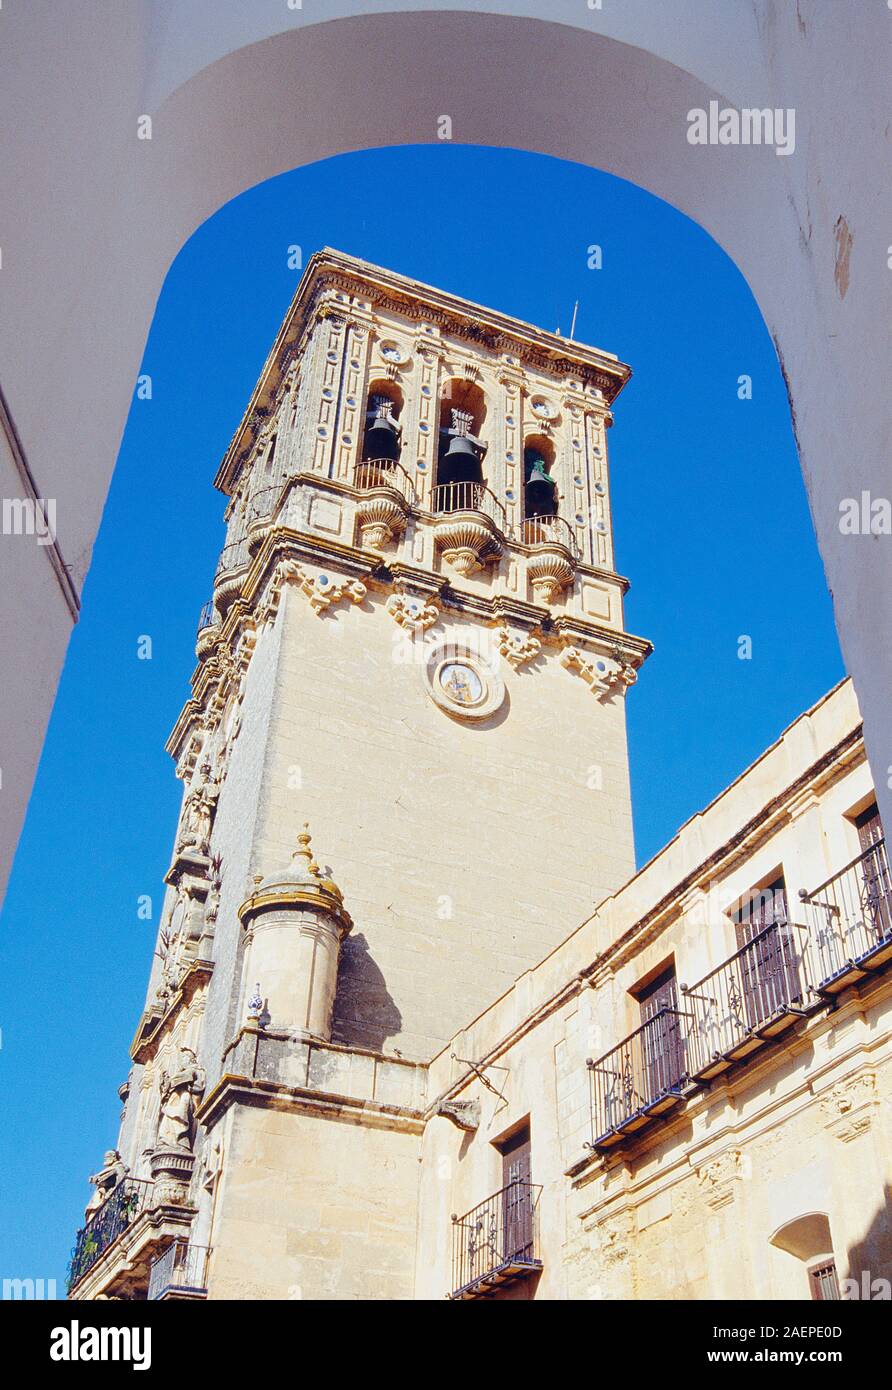 Tour de basilique Santa Maria. Arcos de la Frontera, province de Cadiz, Andalousie, espagne. Banque D'Images